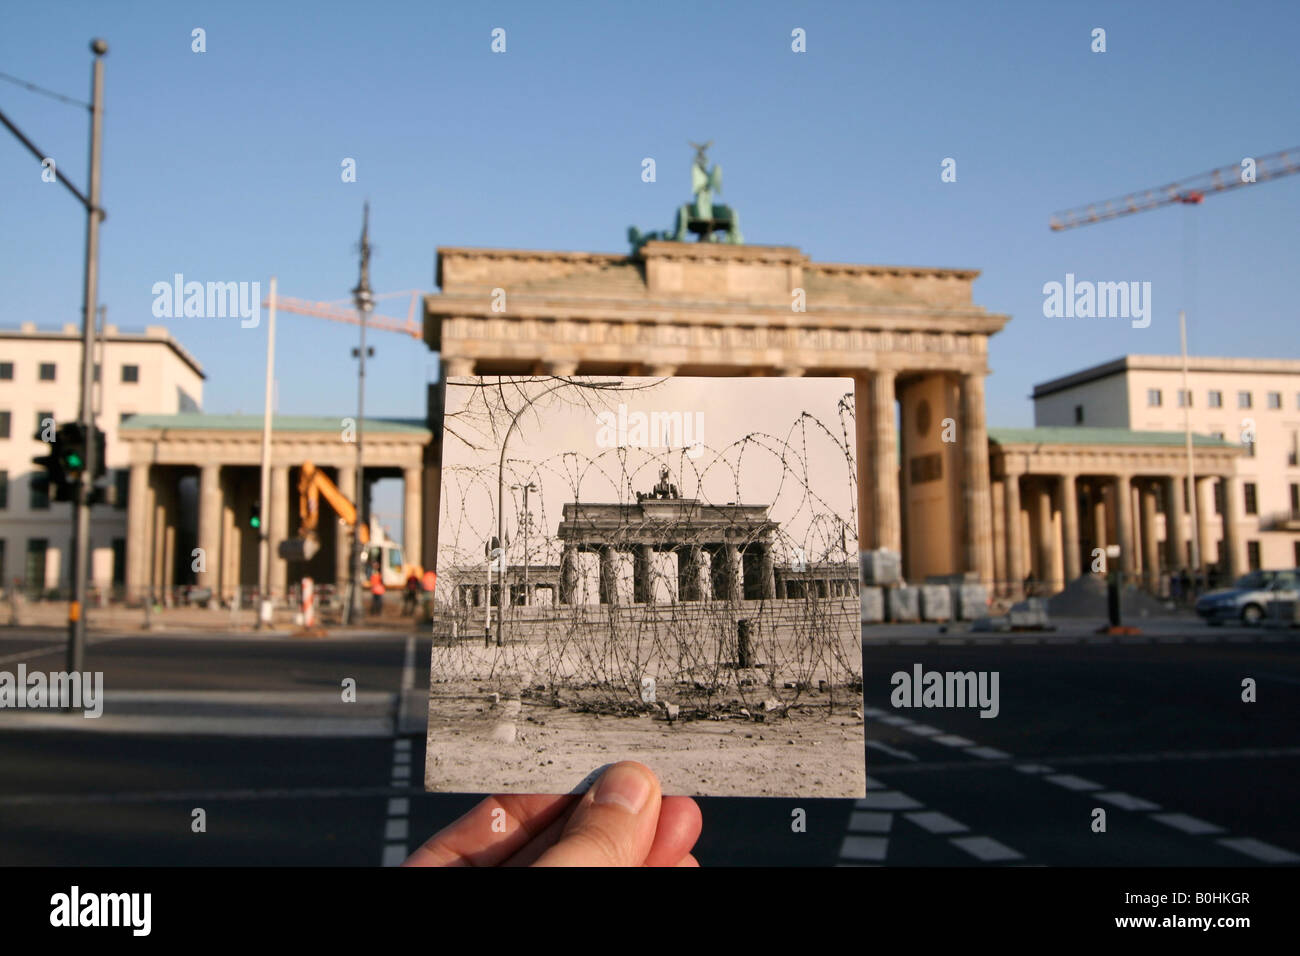 Damals und heute, Hand, die ein altes schwarz-weiß Foto der Brandenburger Tor oder Brandenburger Tor zeigt die Berliner Mauer und Ba Stockfoto